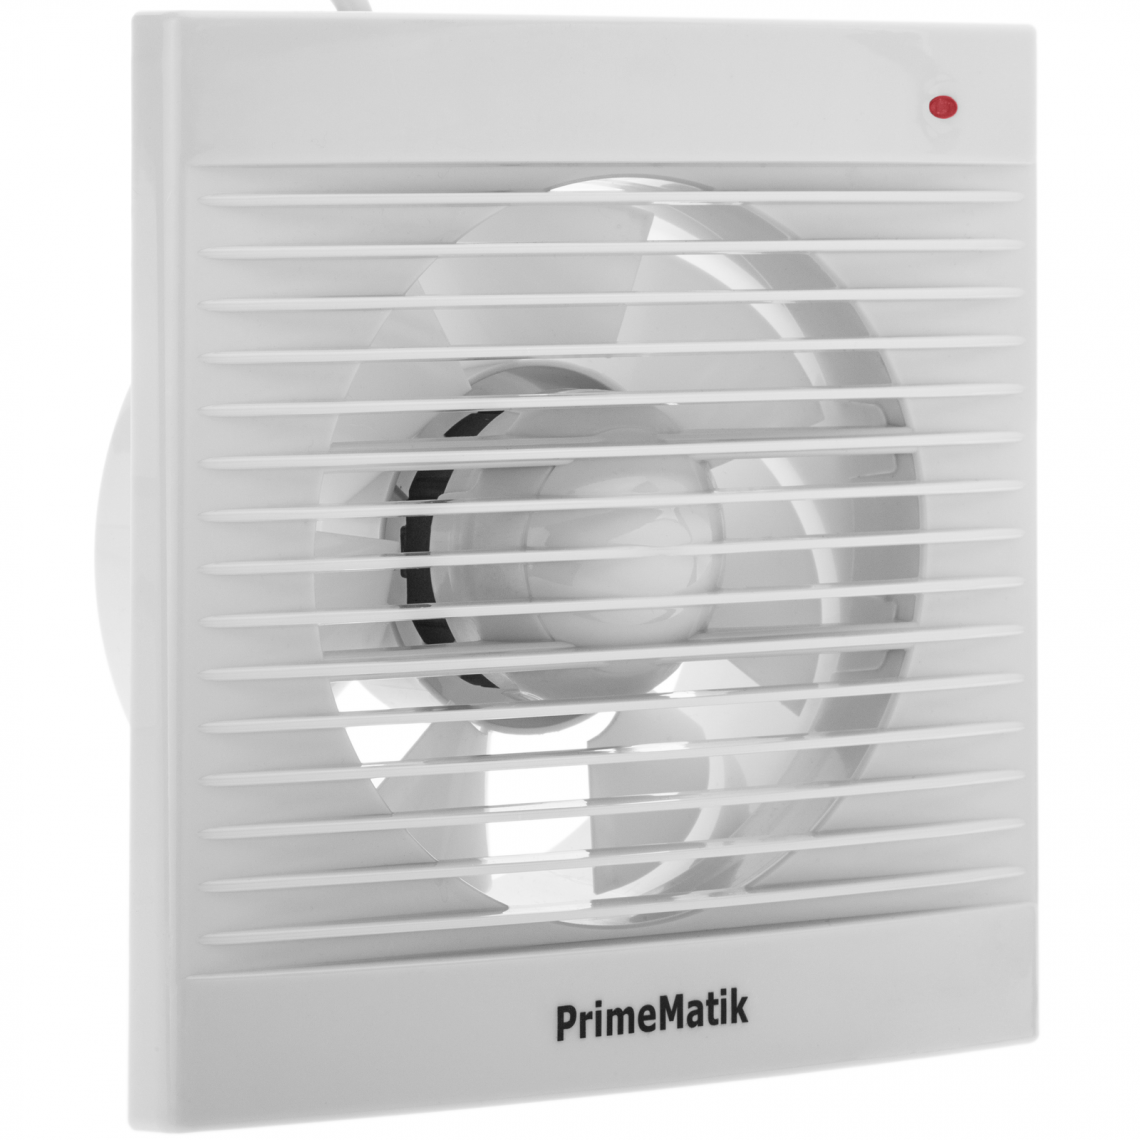 Primematik - Extracteur de ventilateur, Extracteur d’air de 150 mm diamètre, grande puissance d'aspiration, pour toilette cuisine garage - Grille d'aération